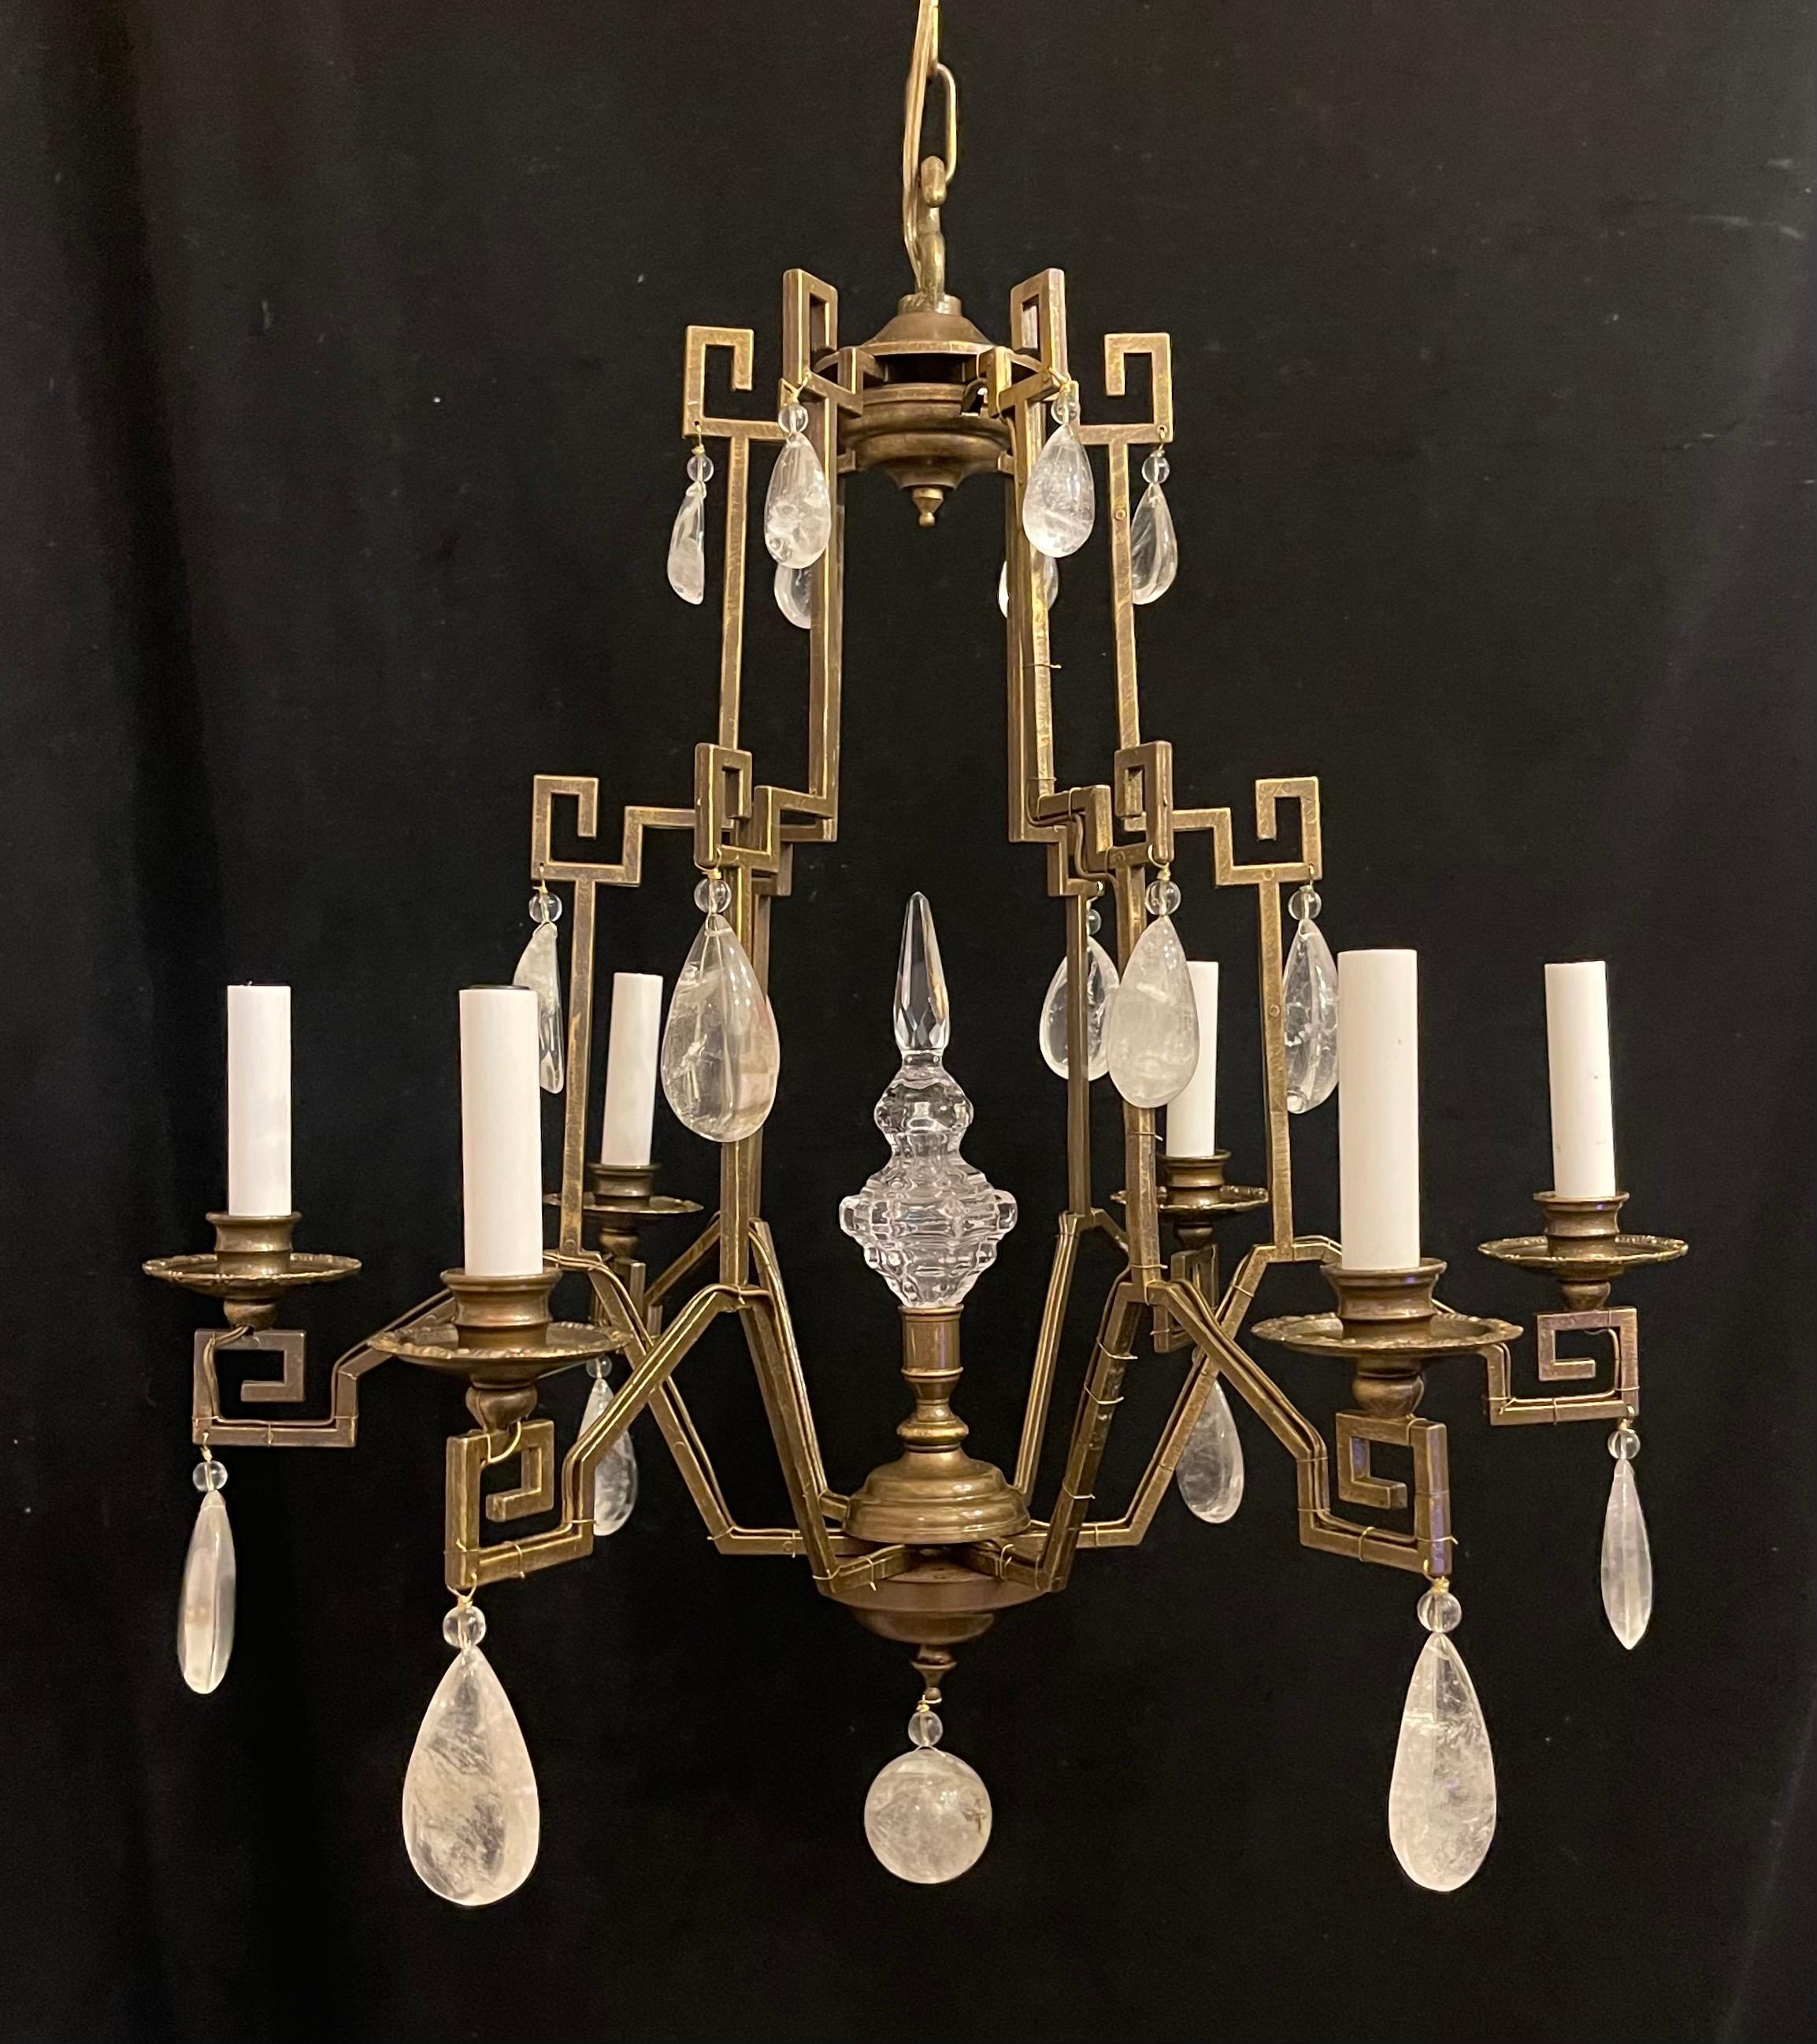 Merveilleux lustre à six chandeliers de style Maison Baguès en forme de pagode en cristal de roche, Chinoiserie, recâblé avec de nouvelles douilles et prêt à être installé avec une chaîne et un baldaquin.